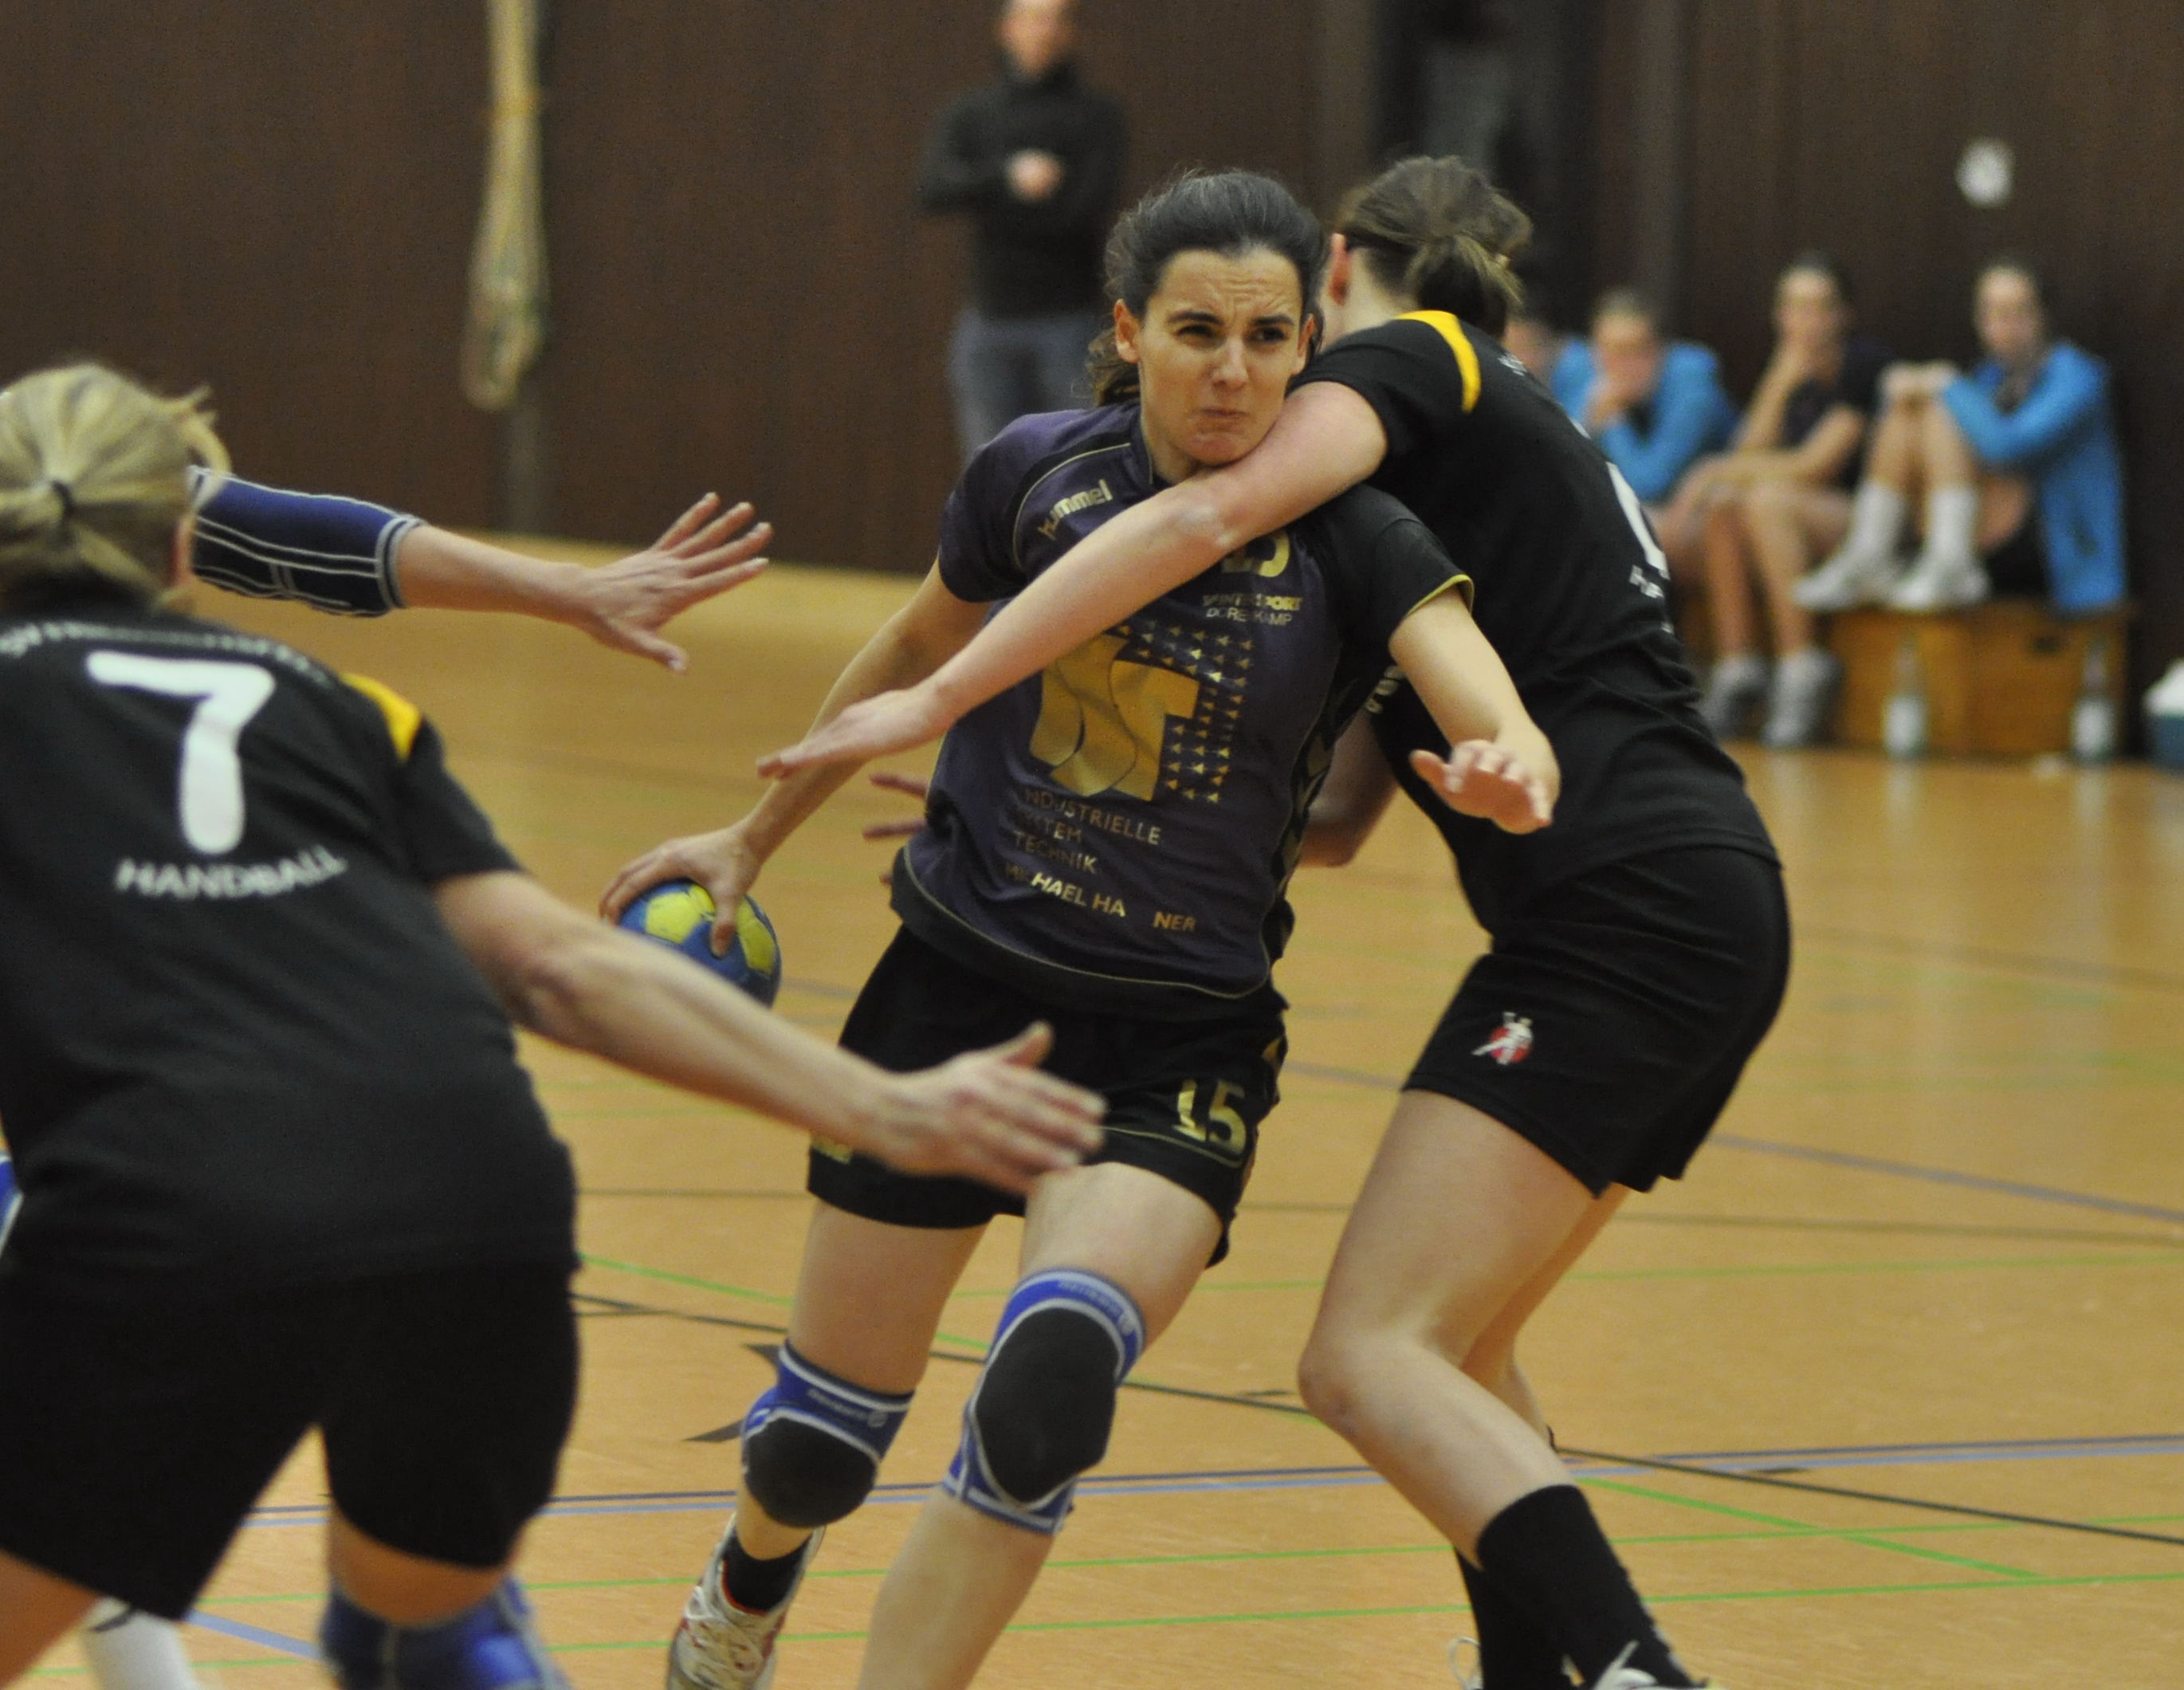  Handball-Landesliga Frauen: TV Issum - SV Friedrichsfeld